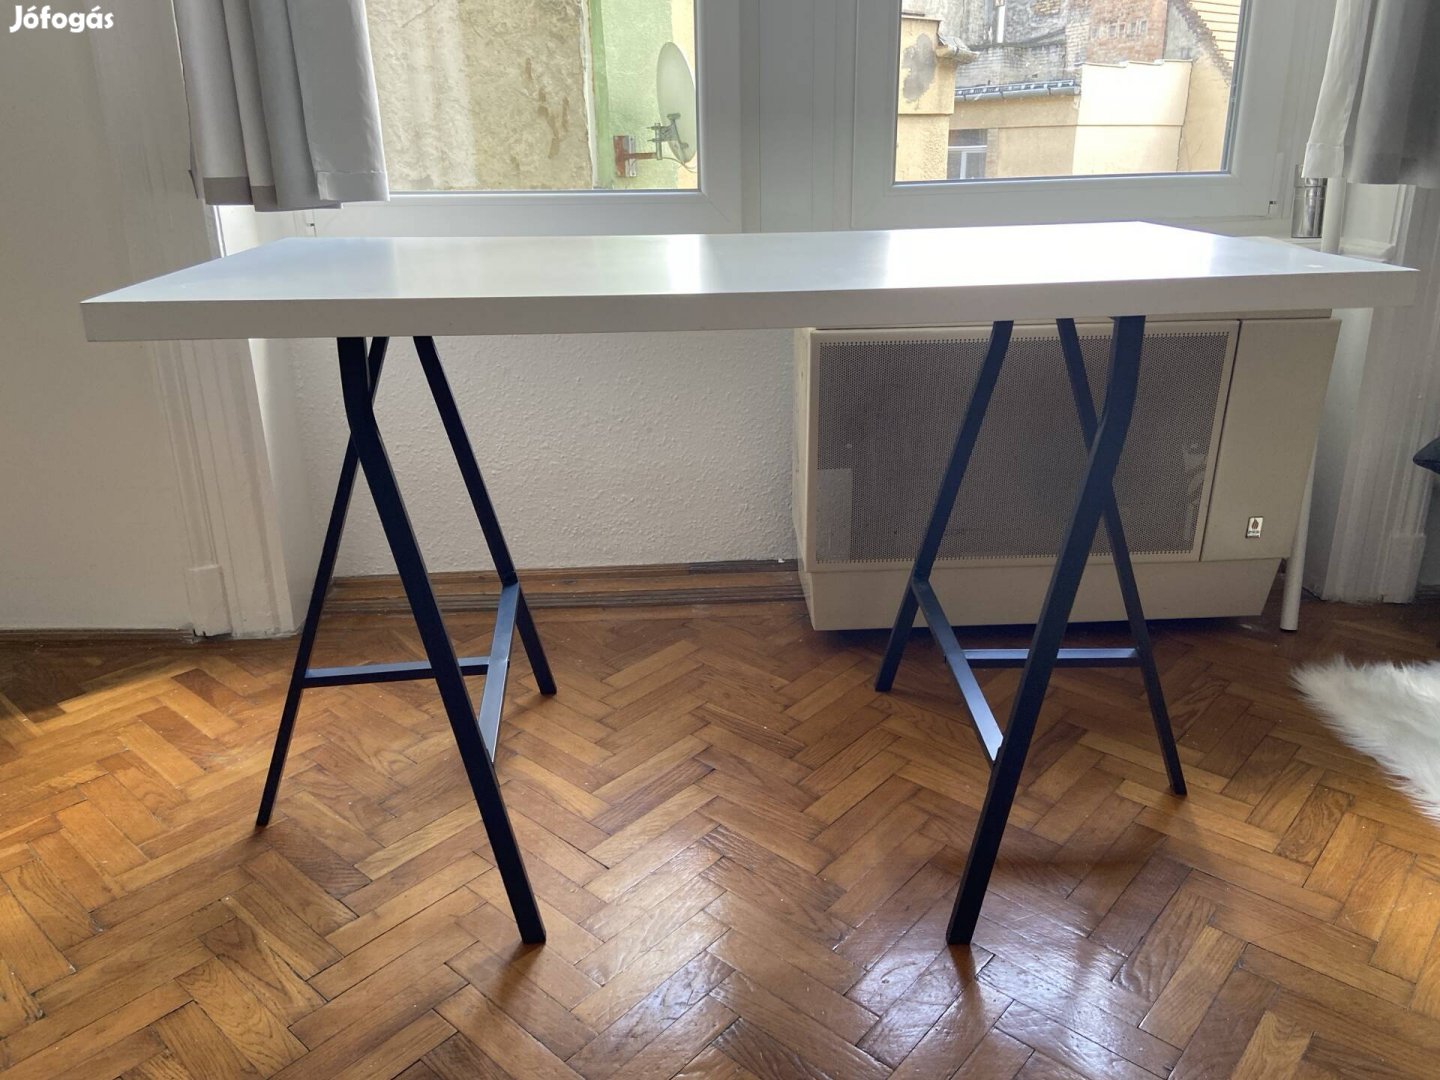 Használt Ikea linnmon asztallap 60x120 cm + 2 db lerberg asztalbak